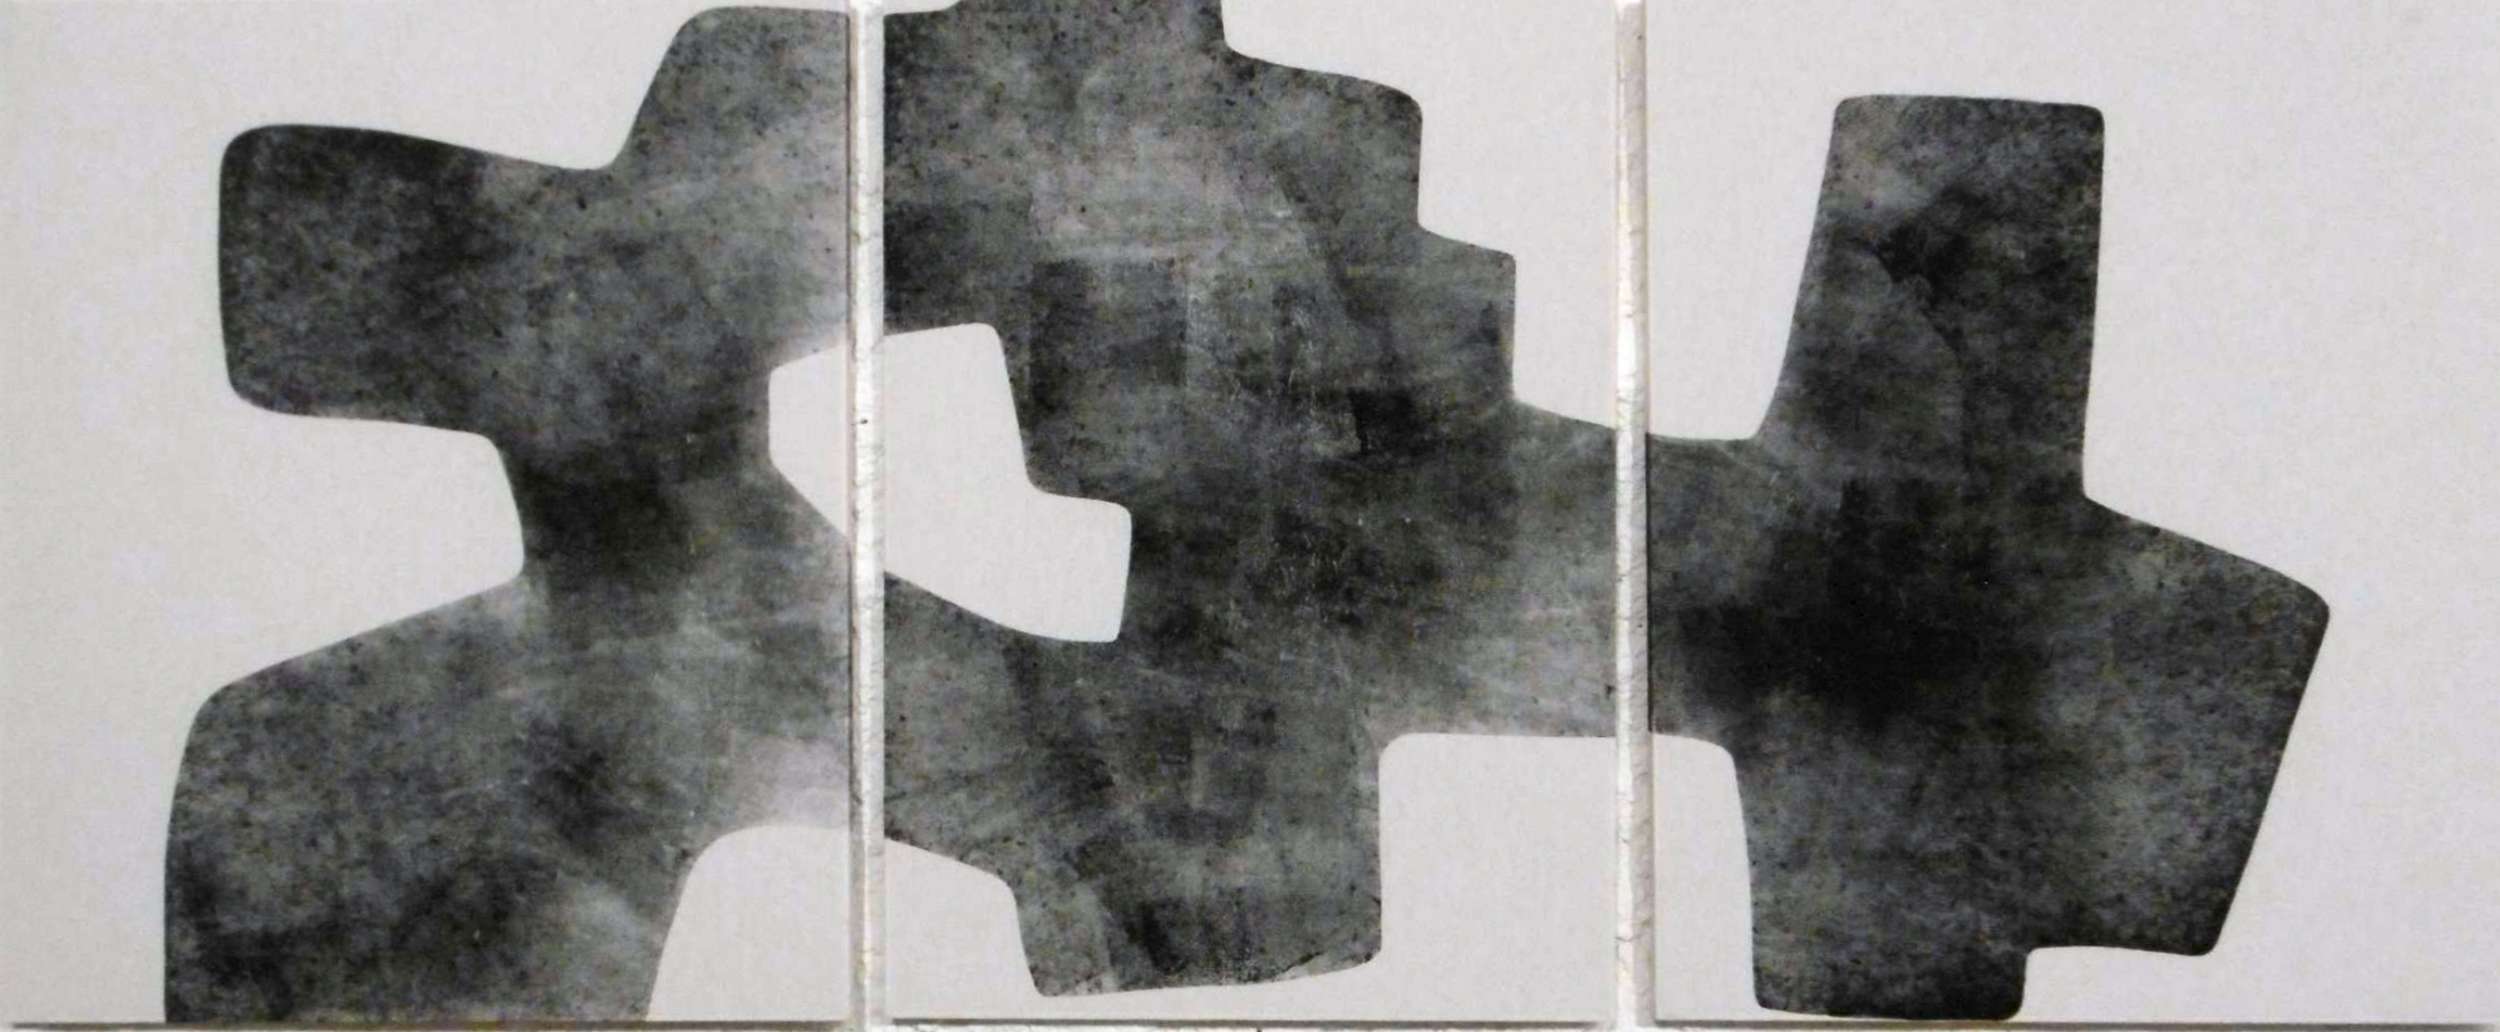 655, fragmentarisch Triptychon , 97 x 235 cm, Holzschnitt auf Leinwand  silografia su tela, 10-18-2500